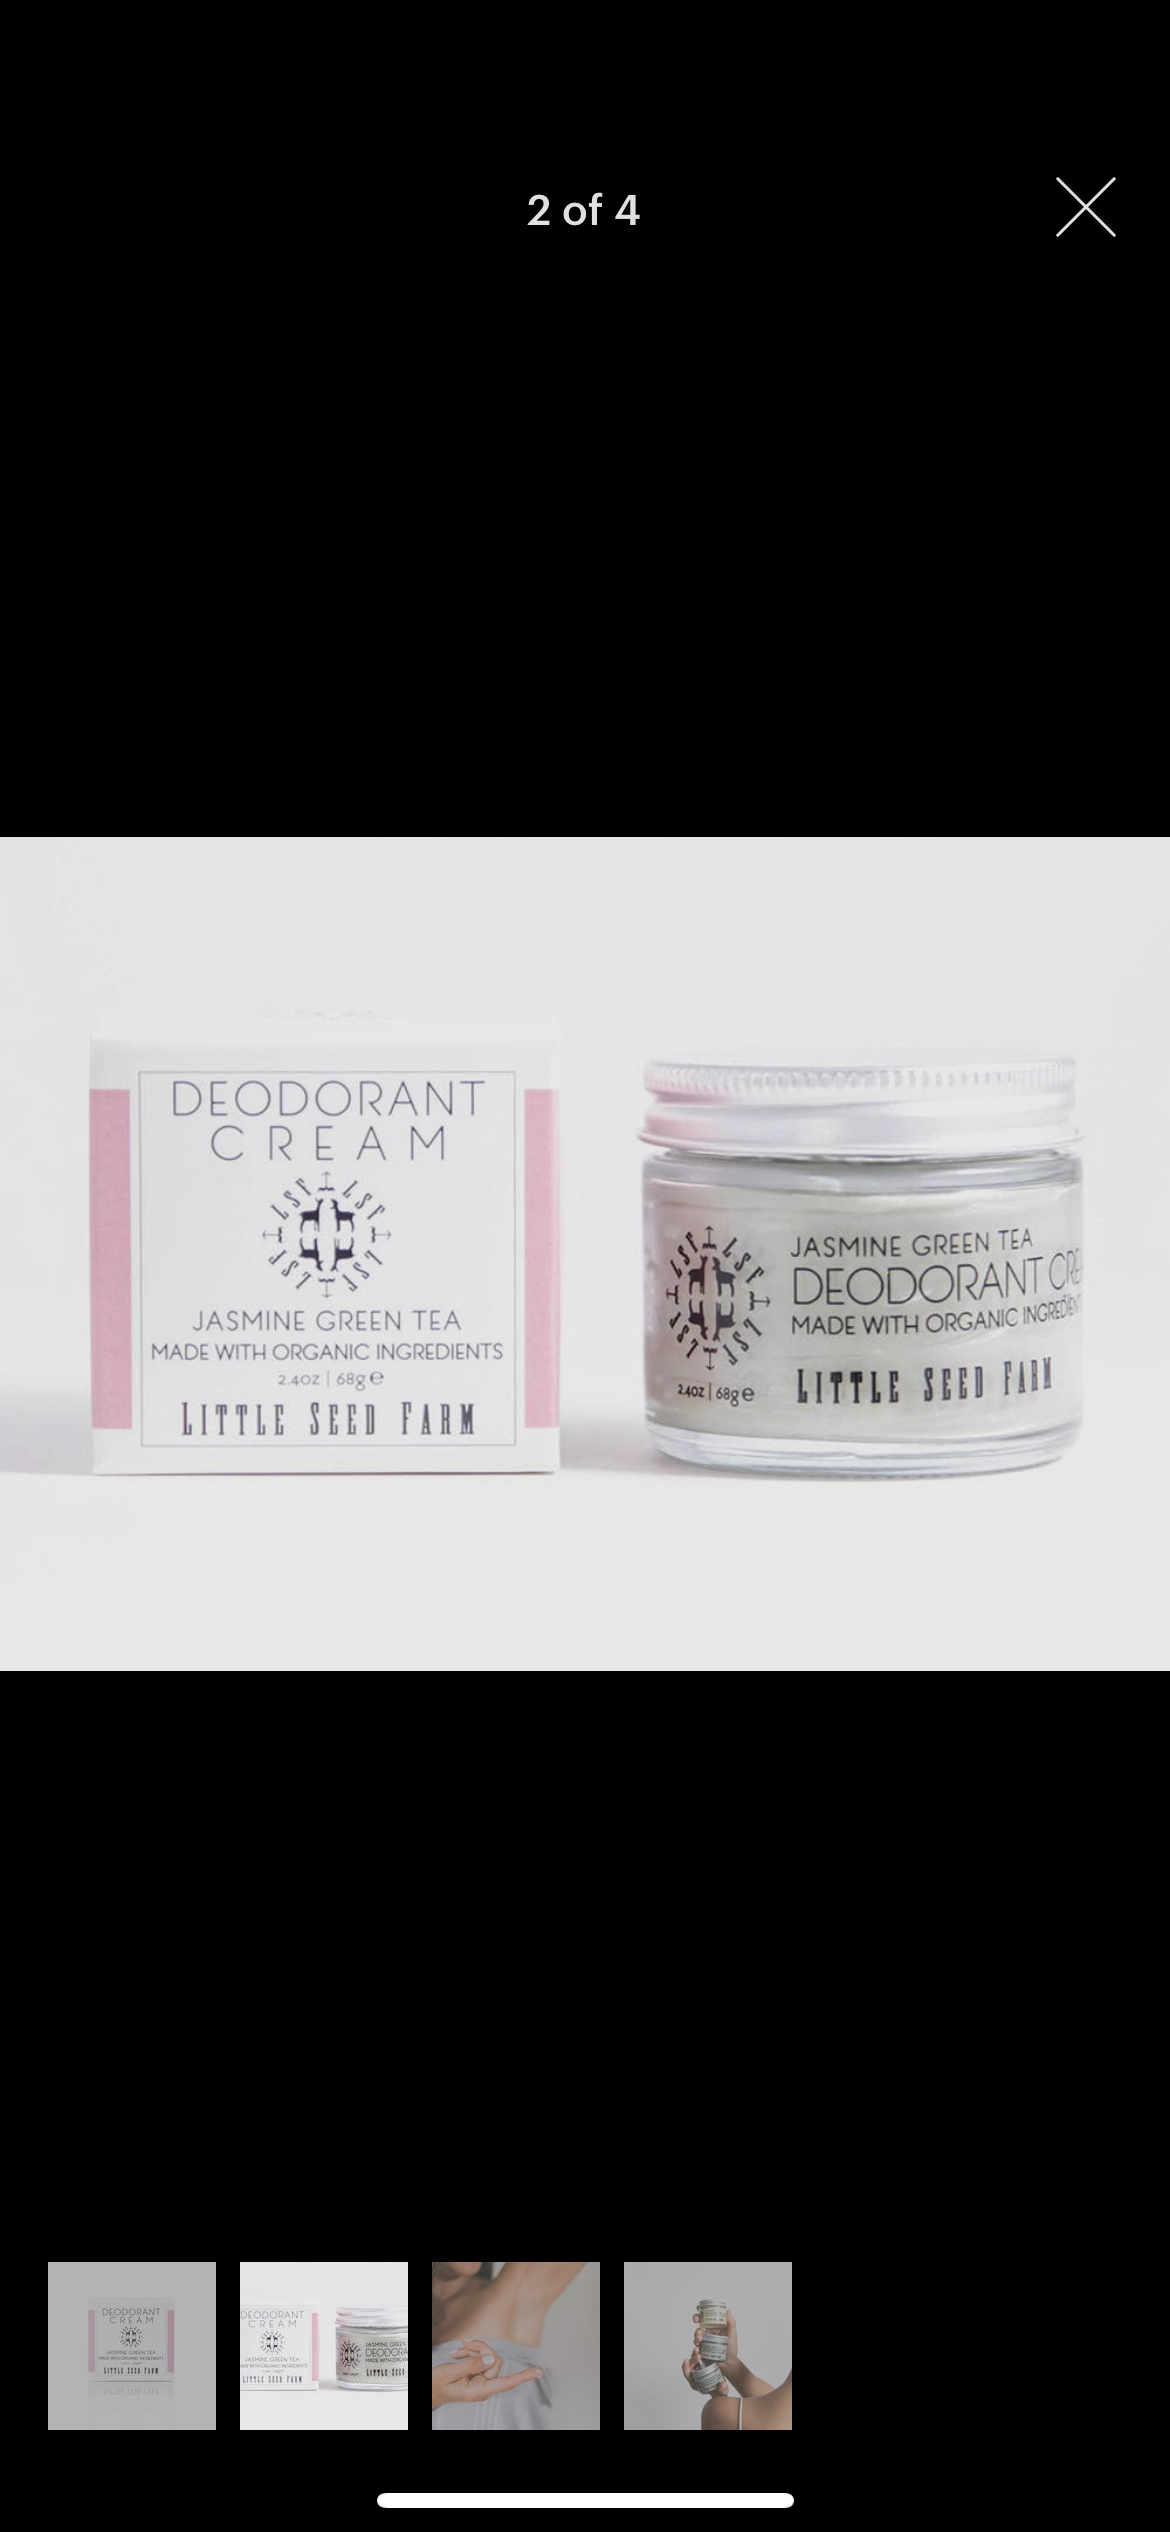 All Natural Deodorant Cream